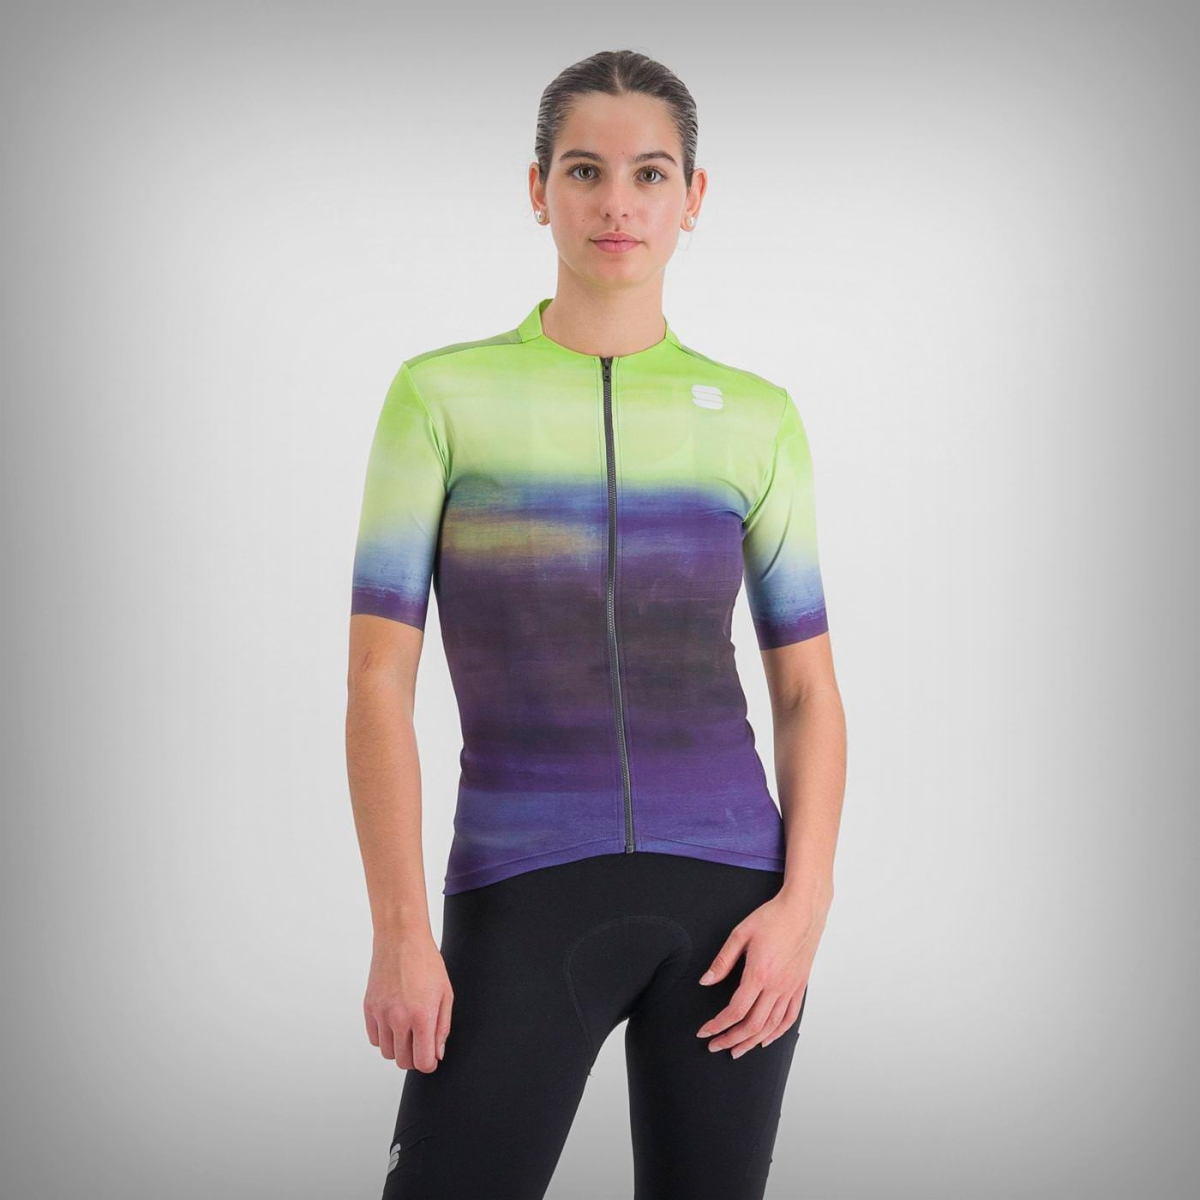 Sportful presenta el Flow Supergiara, un maillot superventas que estrena estética gravel